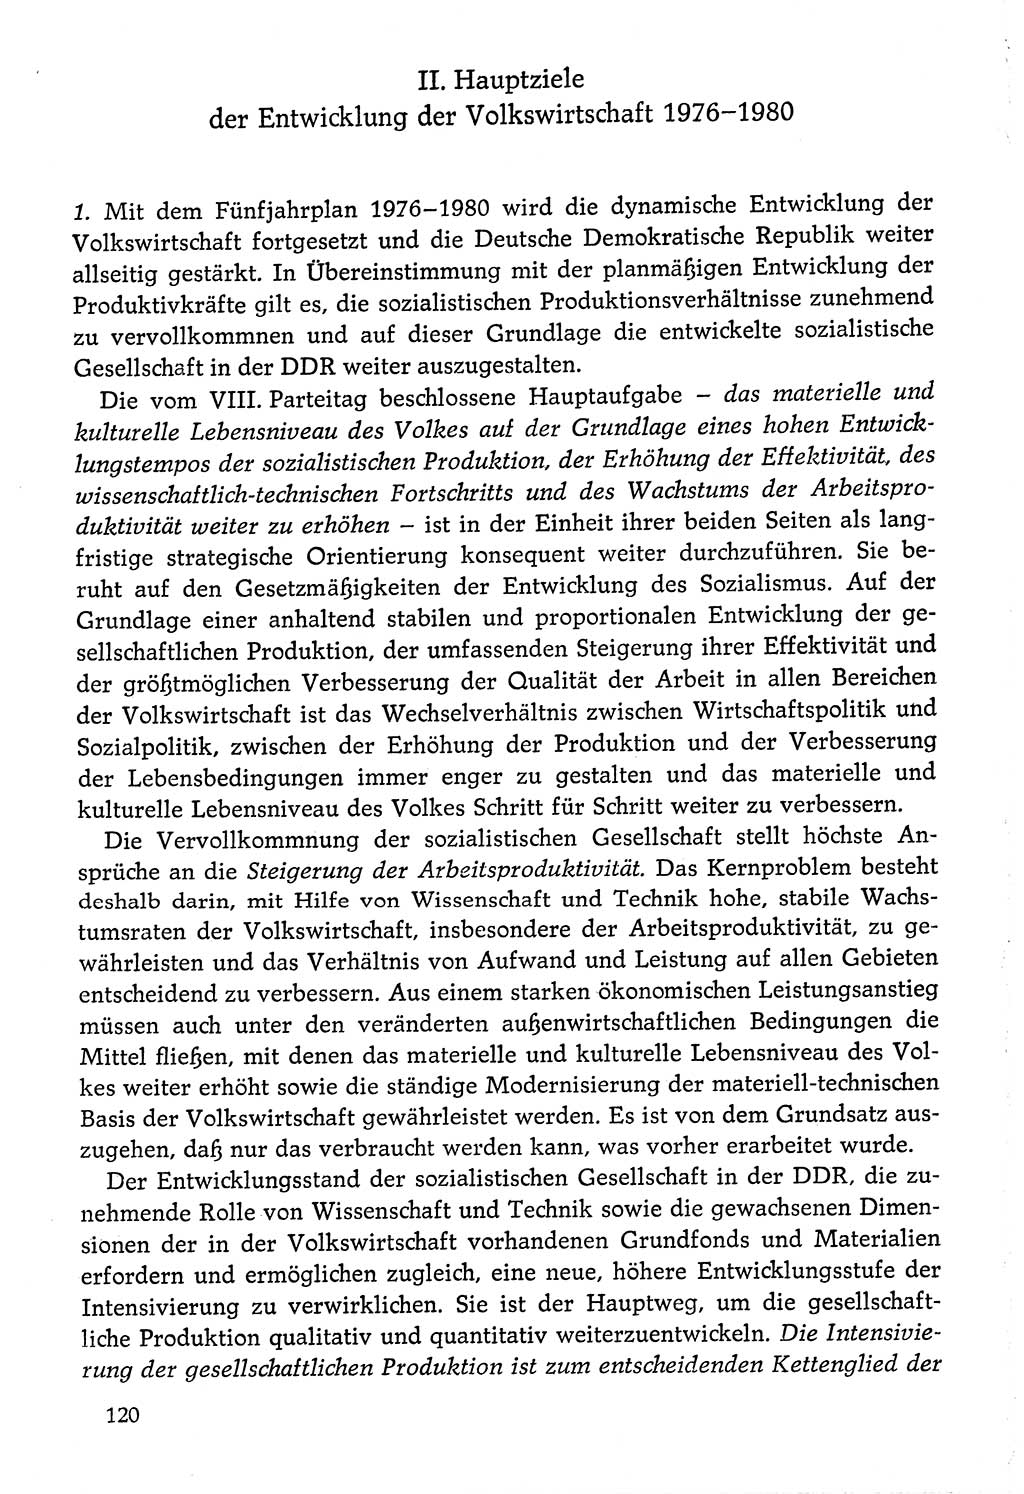 Dokumente der Sozialistischen Einheitspartei Deutschlands (SED) [Deutsche Demokratische Republik (DDR)] 1976-1977, Seite 120 (Dok. SED DDR 1976-1977, S. 120)